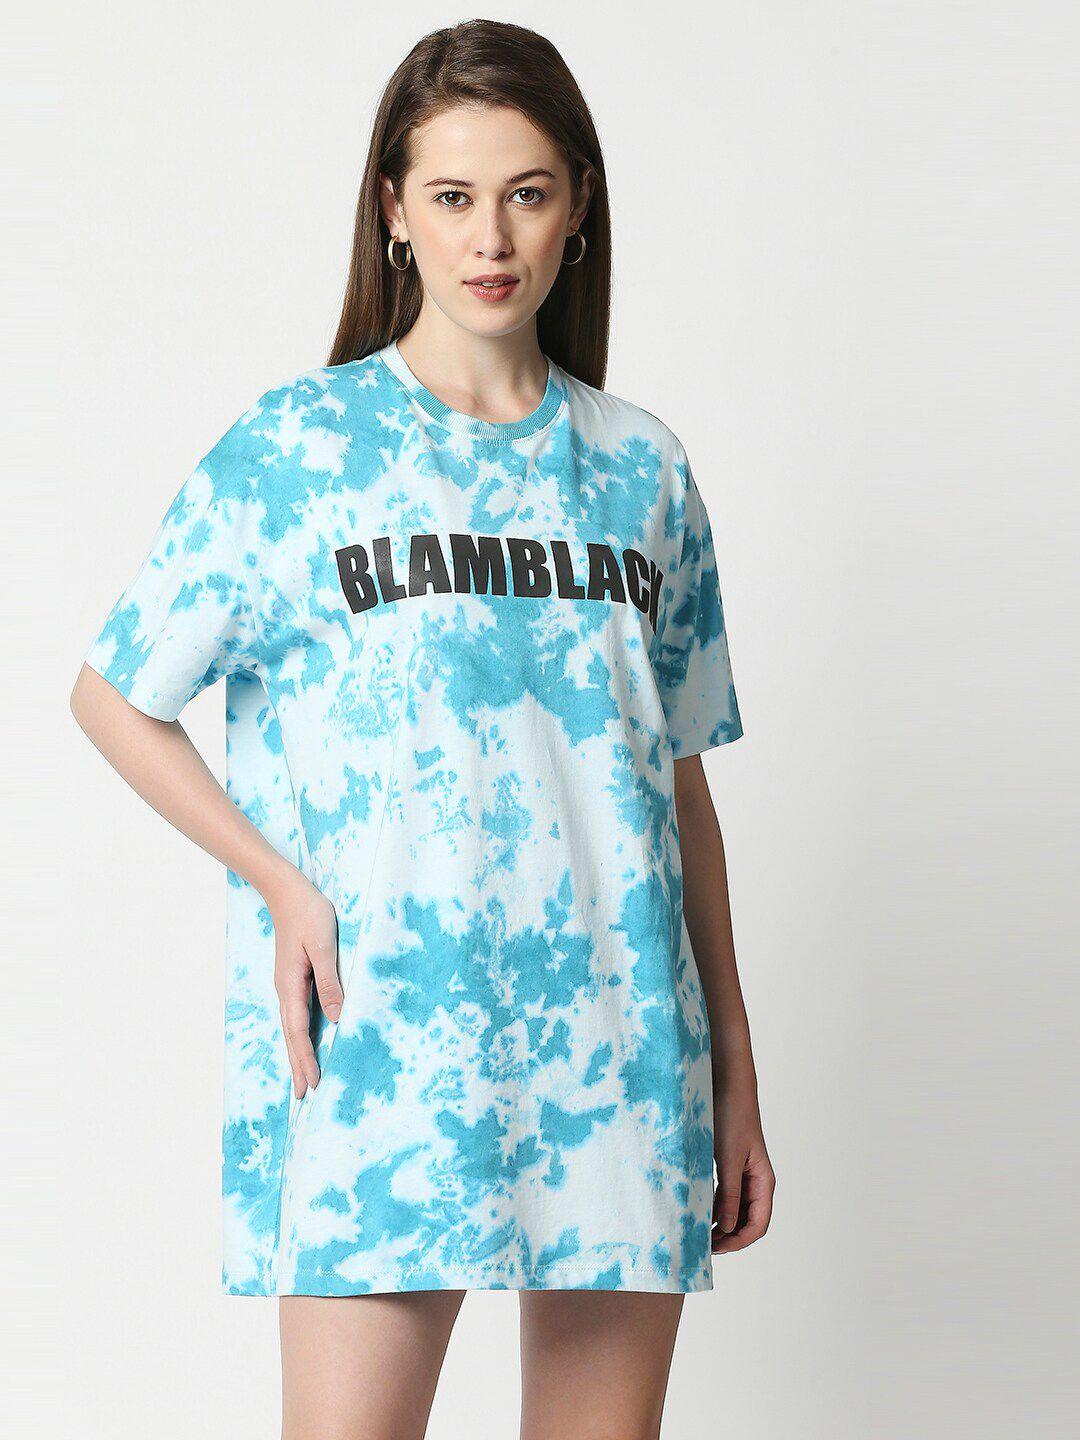 blamblack women blue & white a-line cotton dress